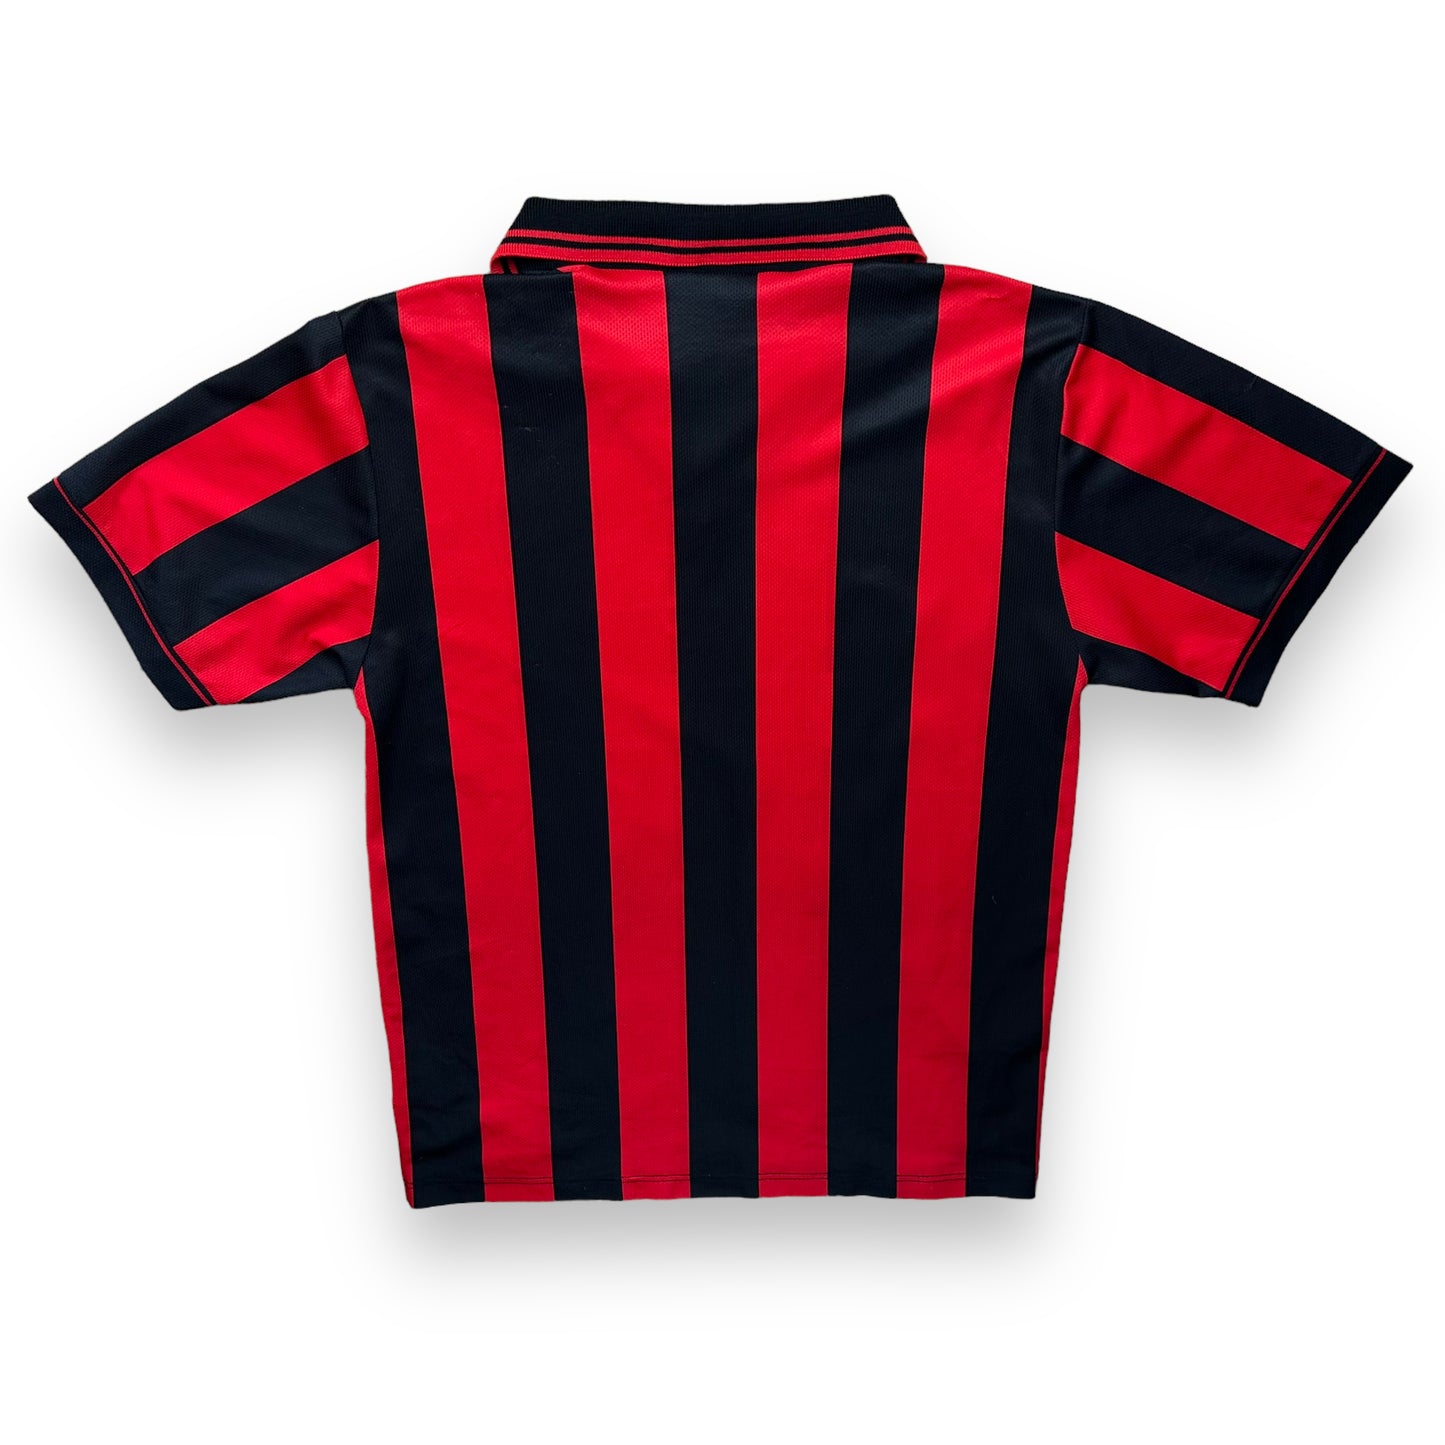 Ac Milan 1997-98 Home Shirt (M)